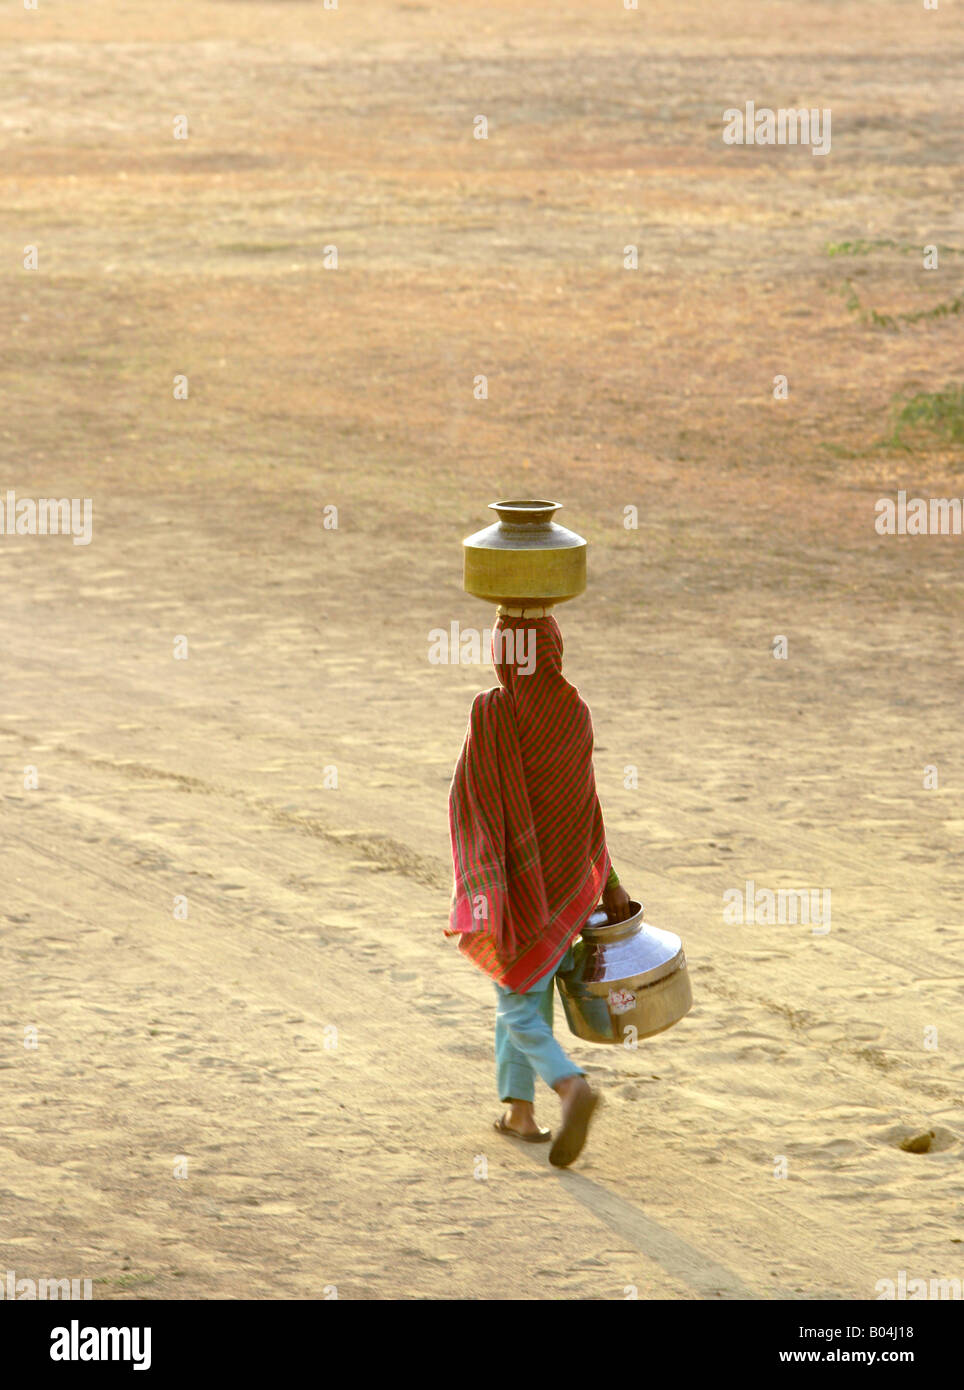 Giovane ragazza il recupero di acqua e il bilanciamento di un contenitore sul suo capo, vicino a Jaisalmer, Rajasthan, India Foto Stock